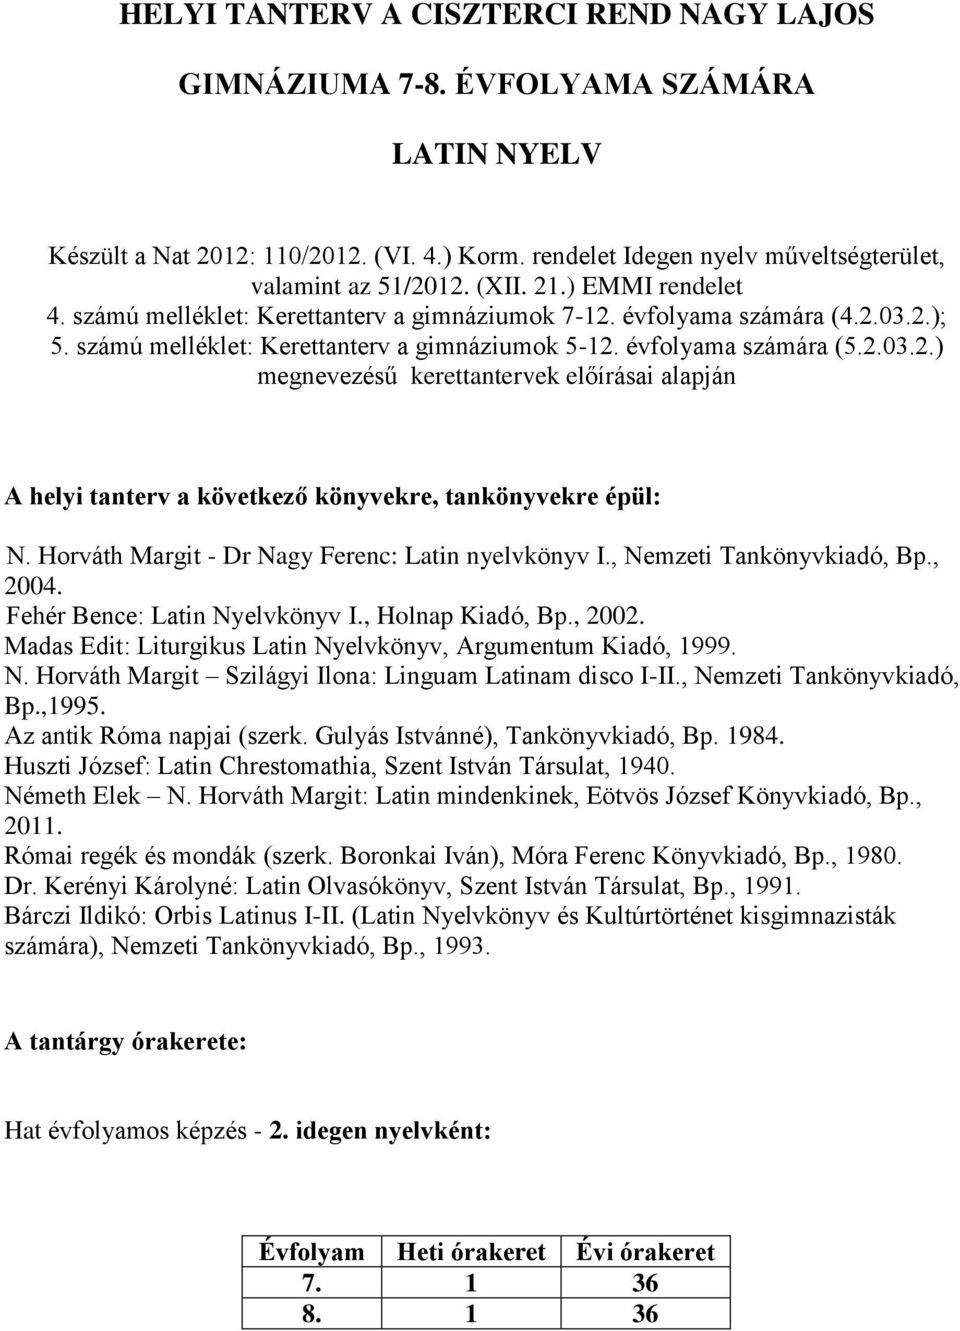 Horváth Margit - Dr Nagy Ferenc: Latin nyelvkönyv I., Nemzeti Tankönyvkiadó, Bp., 2004. Fehér Bence: Latin Nyelvkönyv I., Holnap Kiadó, Bp., 2002.